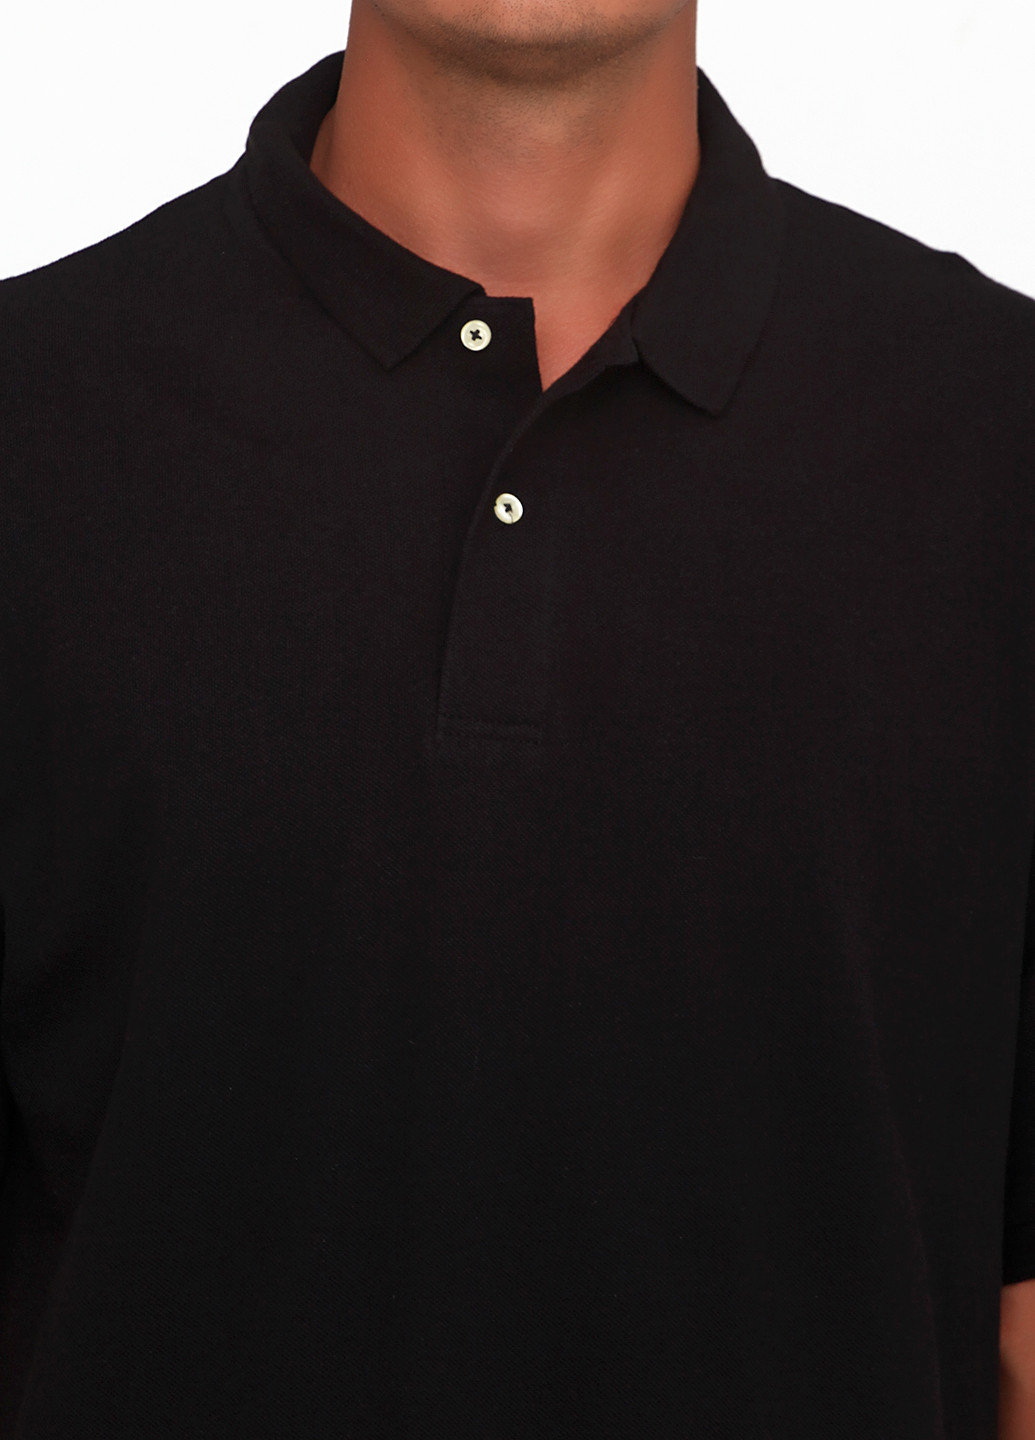 Черная футболка-поло для мужчин Outer Banks с надписью